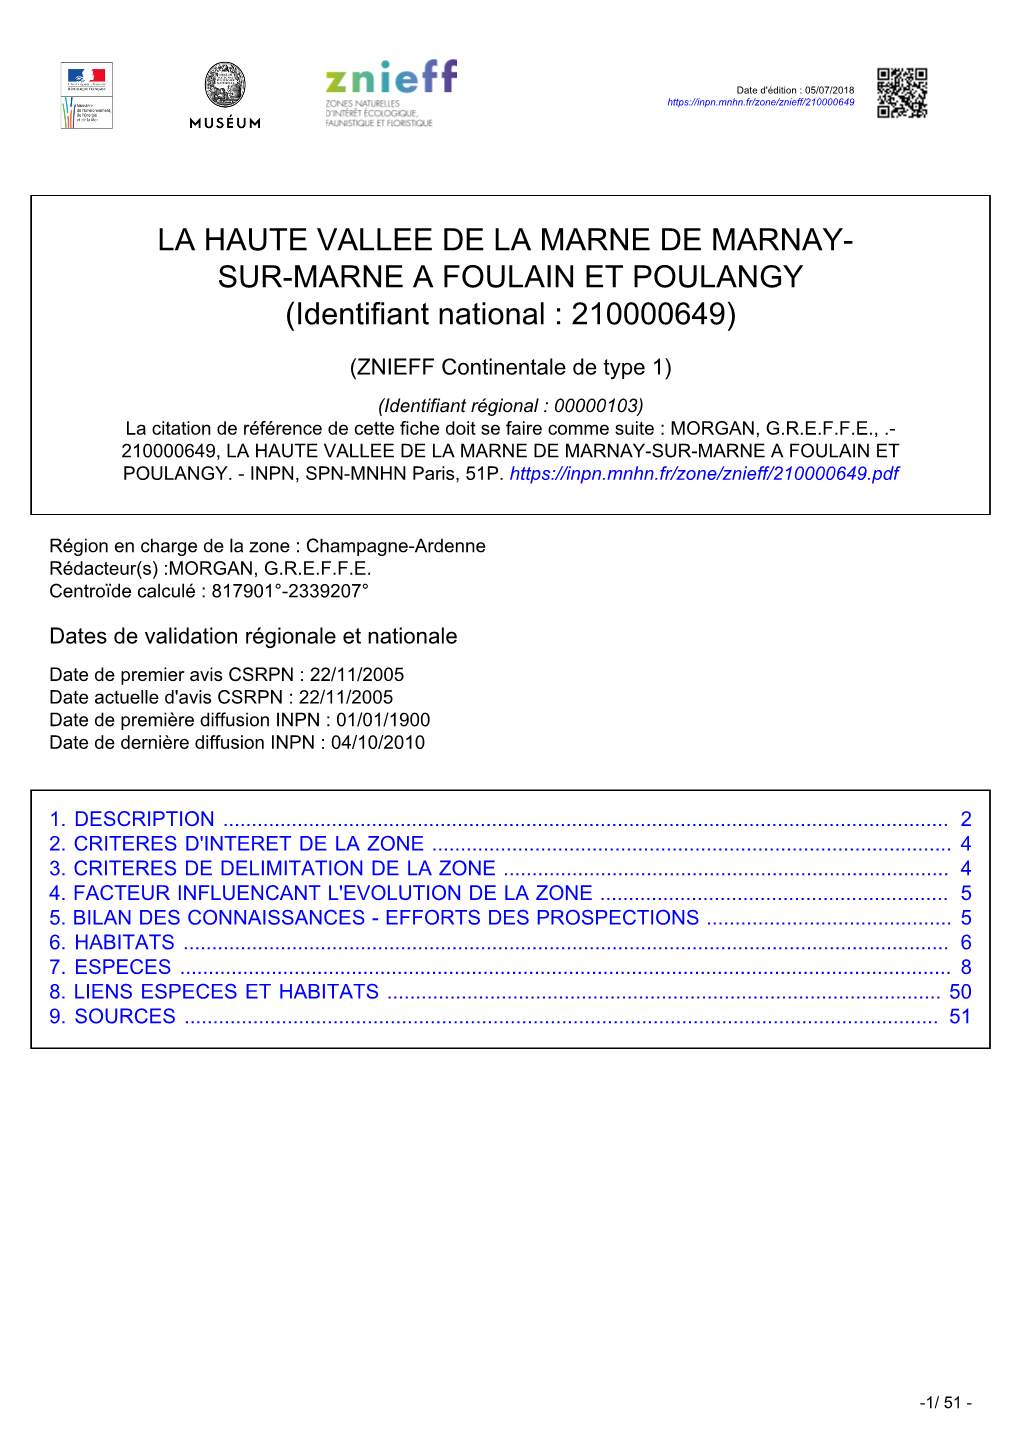 LA HAUTE VALLEE DE LA MARNE DE MARNAY- SUR-MARNE a FOULAIN ET POULANGY (Identifiant National : 210000649)